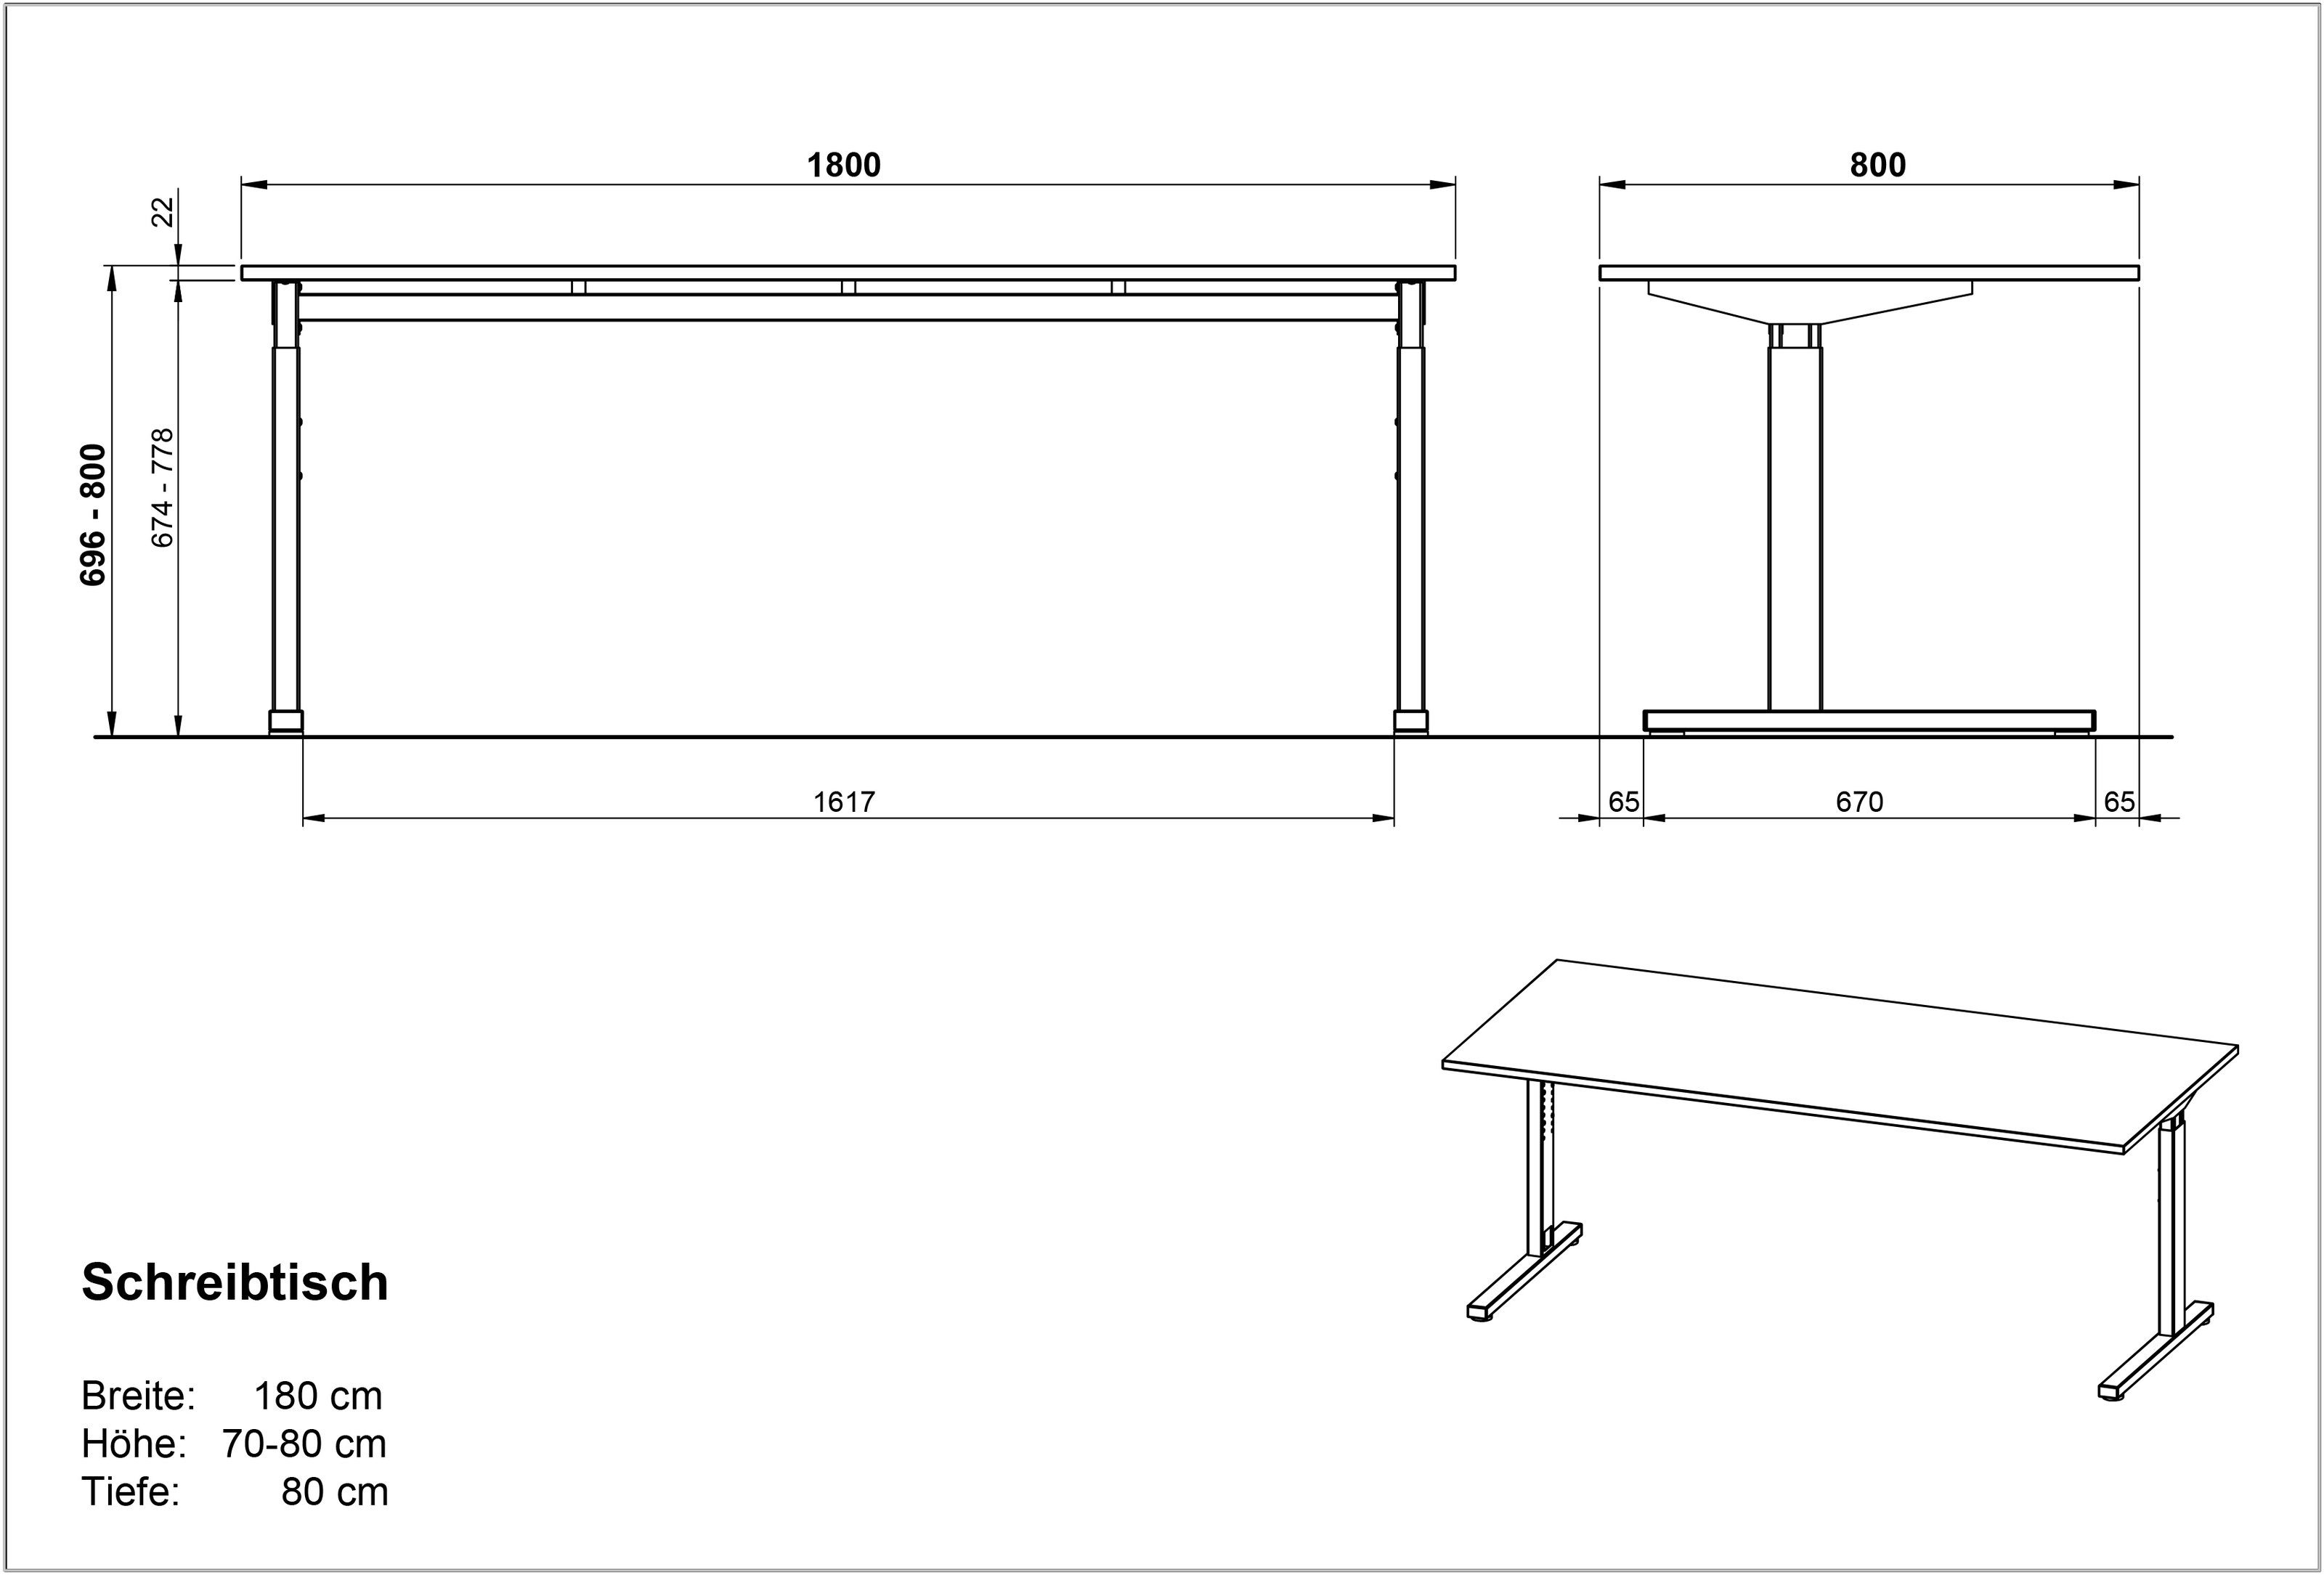 416 (BxHxT: cm), grau, in möbelando 80x80x80 Schreibtisch silber